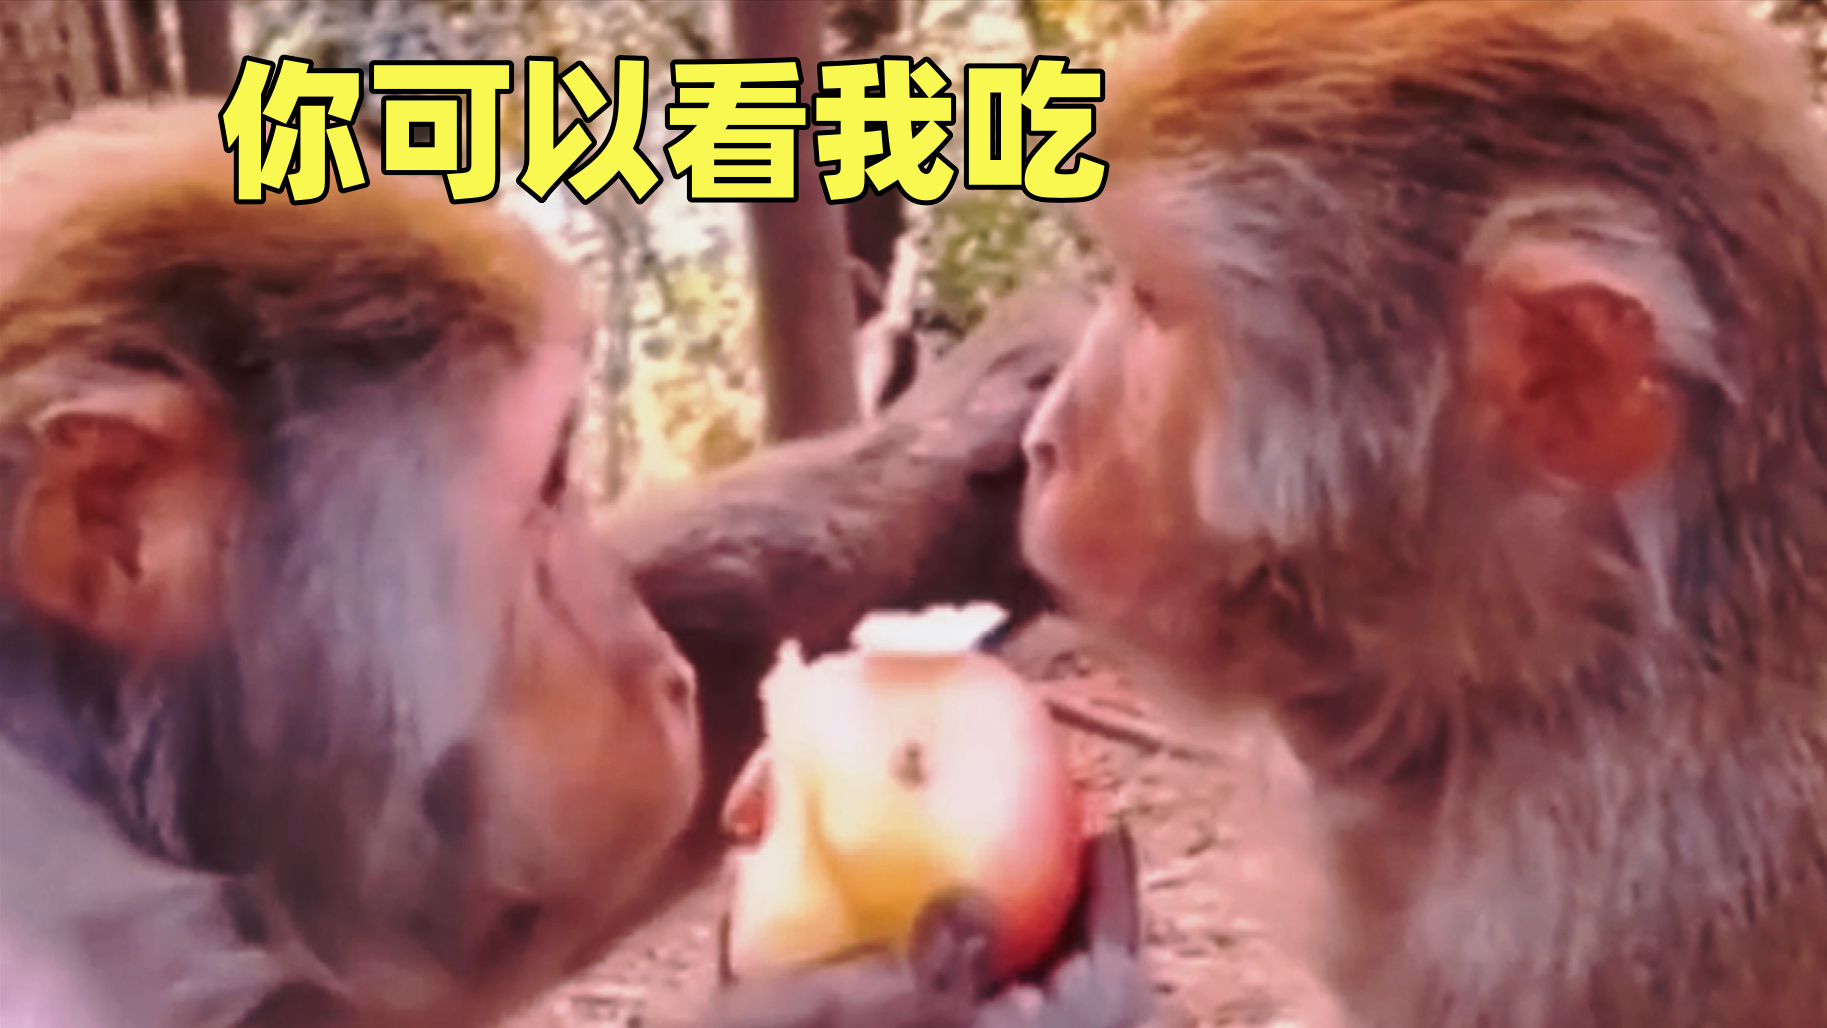 猴子：我虽不让你吃，但我让你看